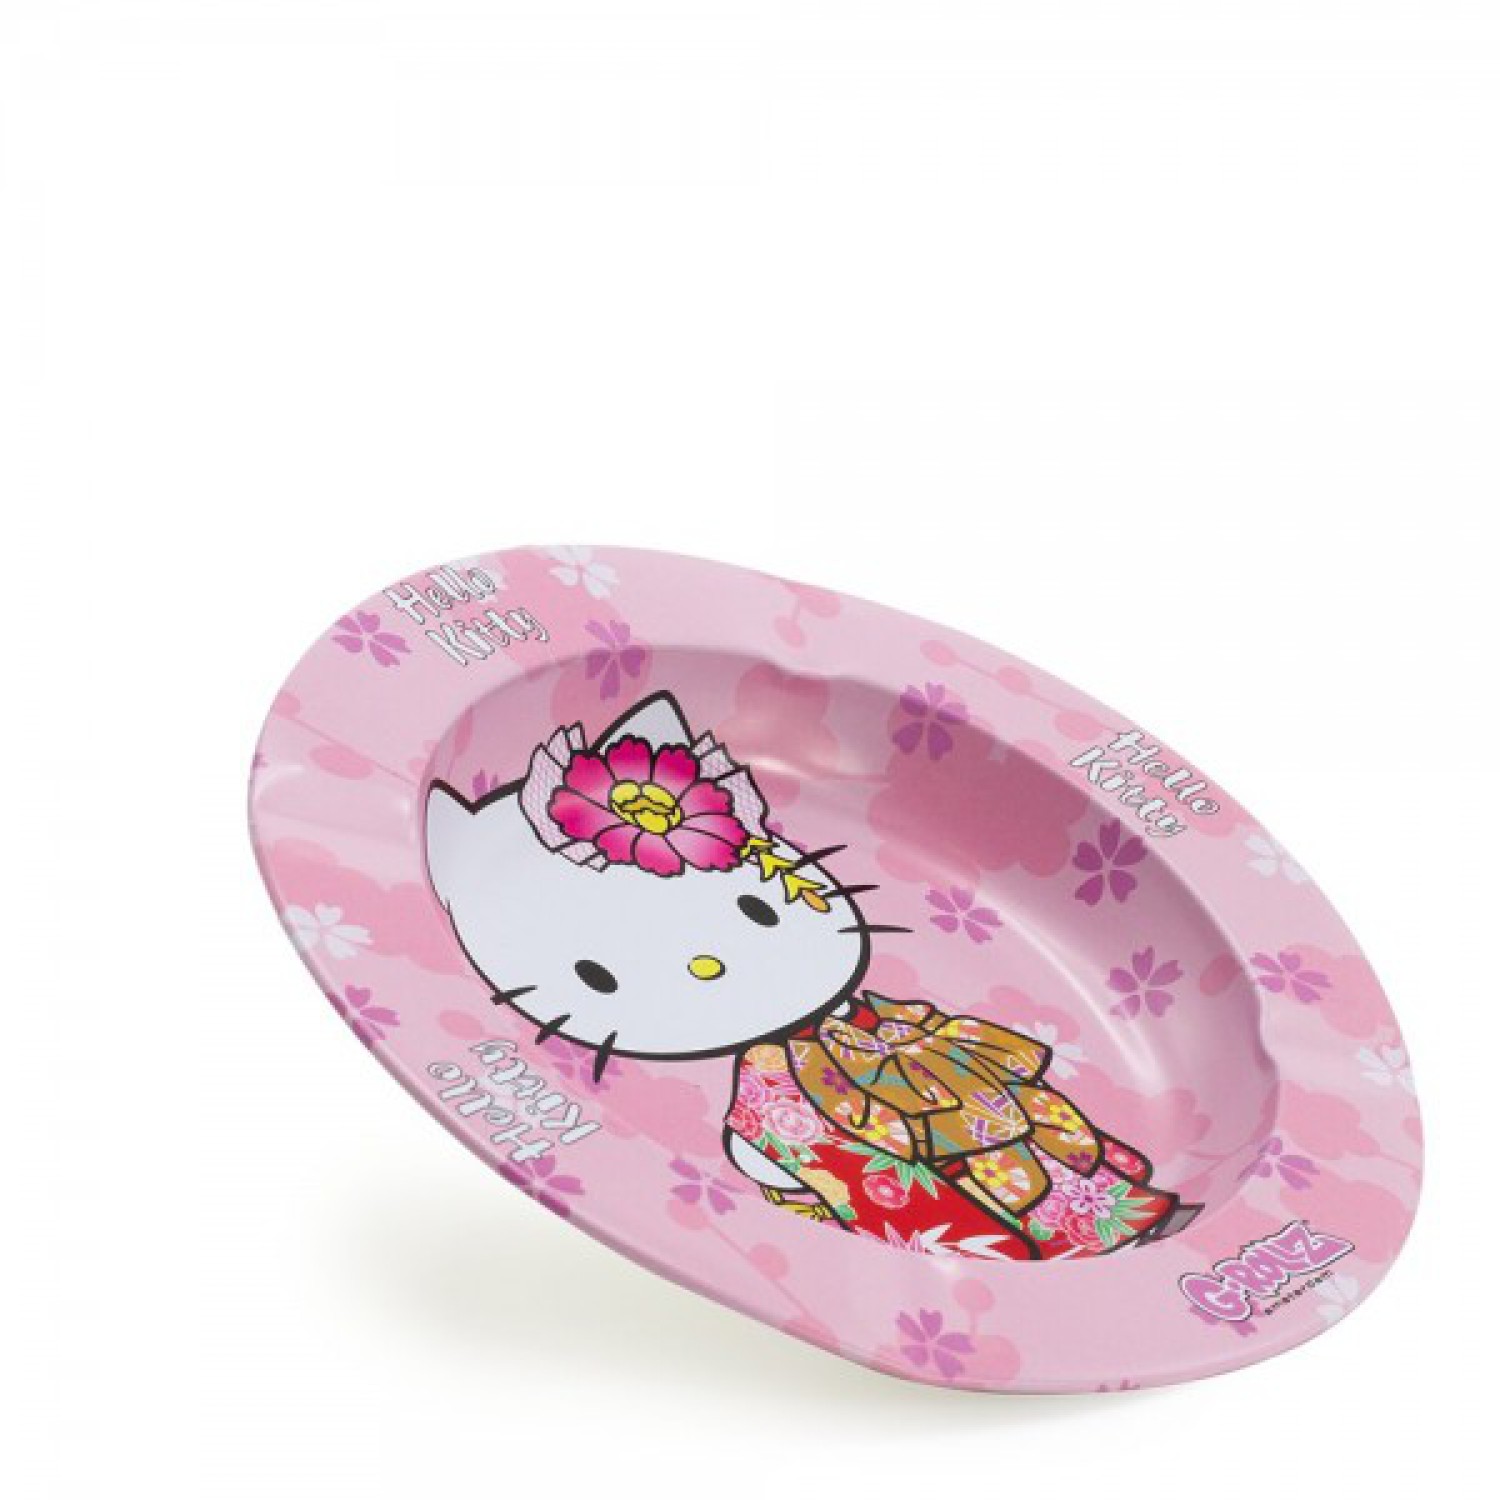 G-Rollz | Hello Kitty „Kimono Pink“ Aschenbecher – Durchmesser: 13,5 cm – 10 Stück im Display